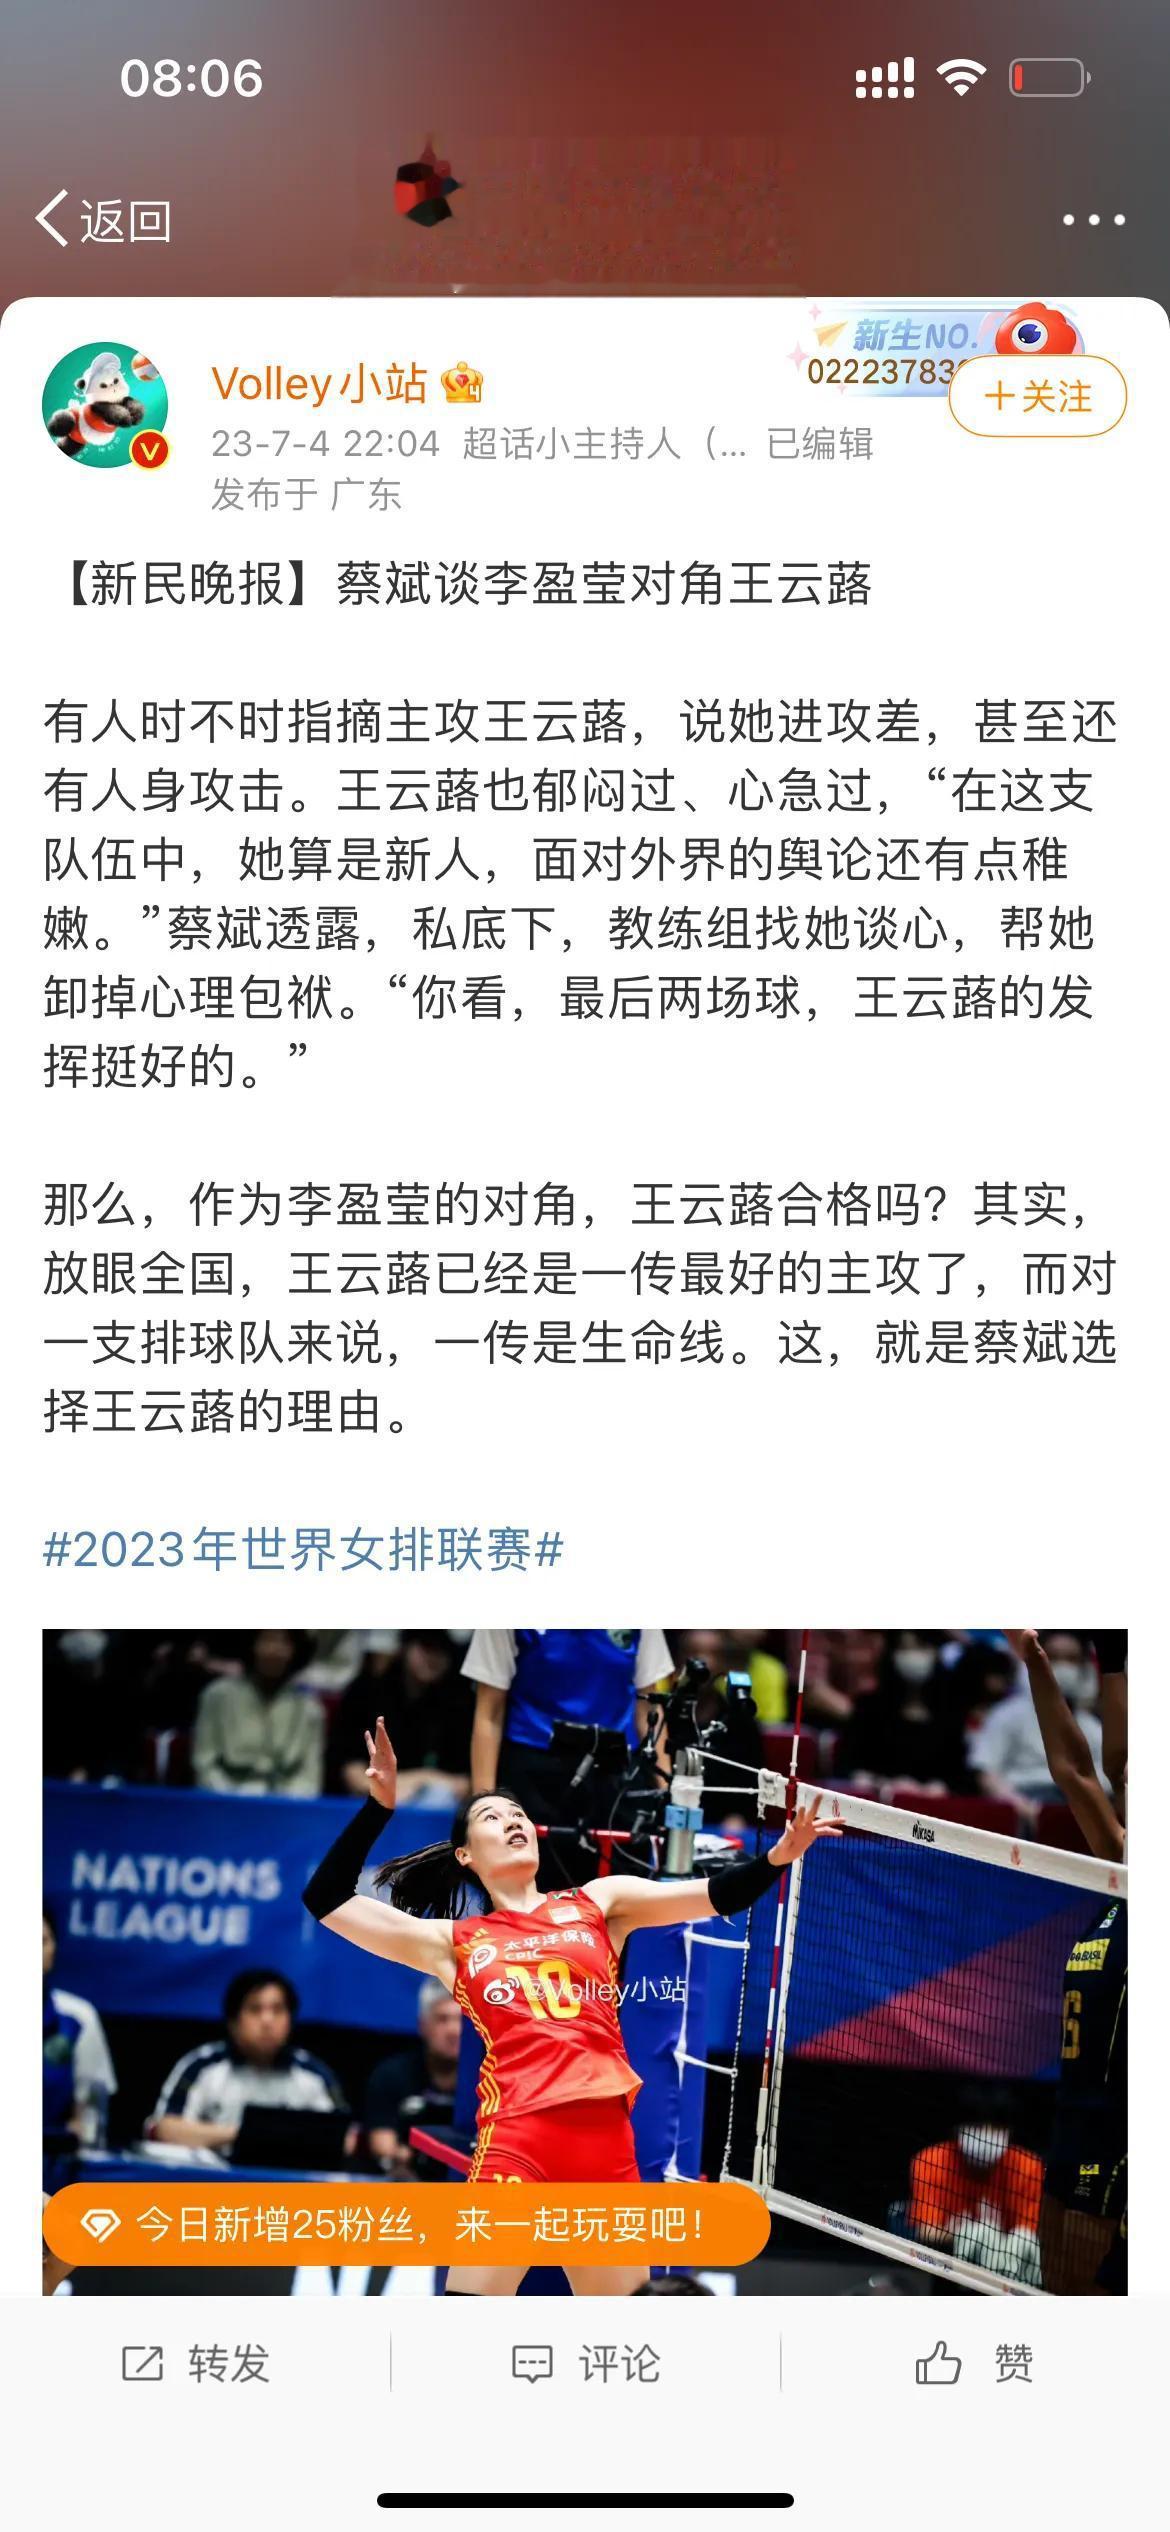 球技差？关系户？蔡斌首度回应重用王云蕗质疑，中国女排球迷看清了。

最近，中国女(1)